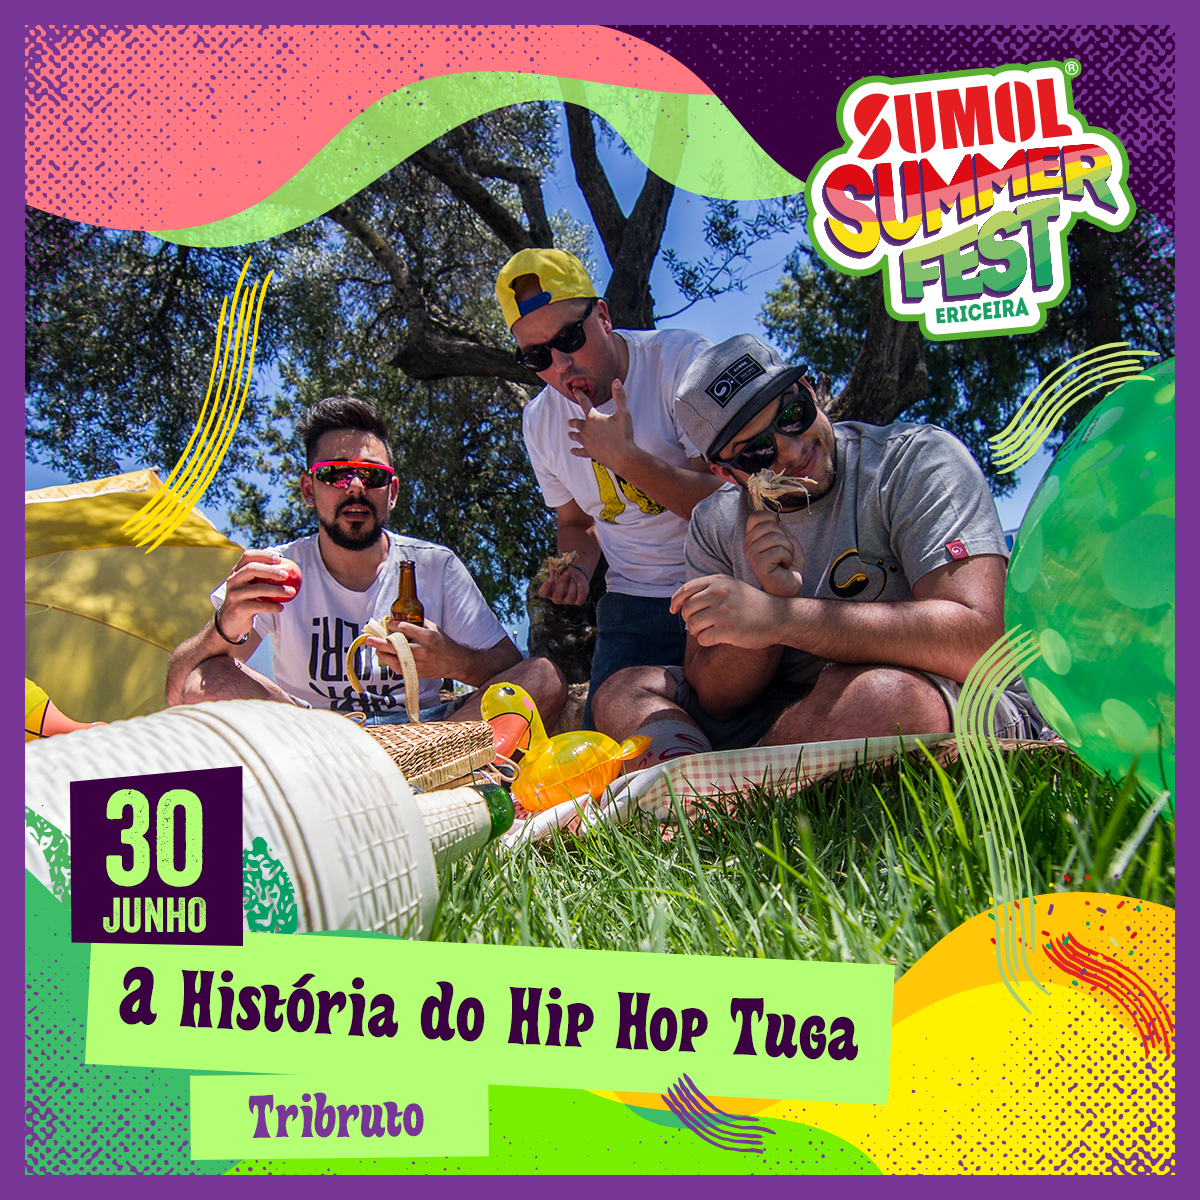 TRIBRUTO @ A História do Hip Hop Tuga no Sumol Summer Fest